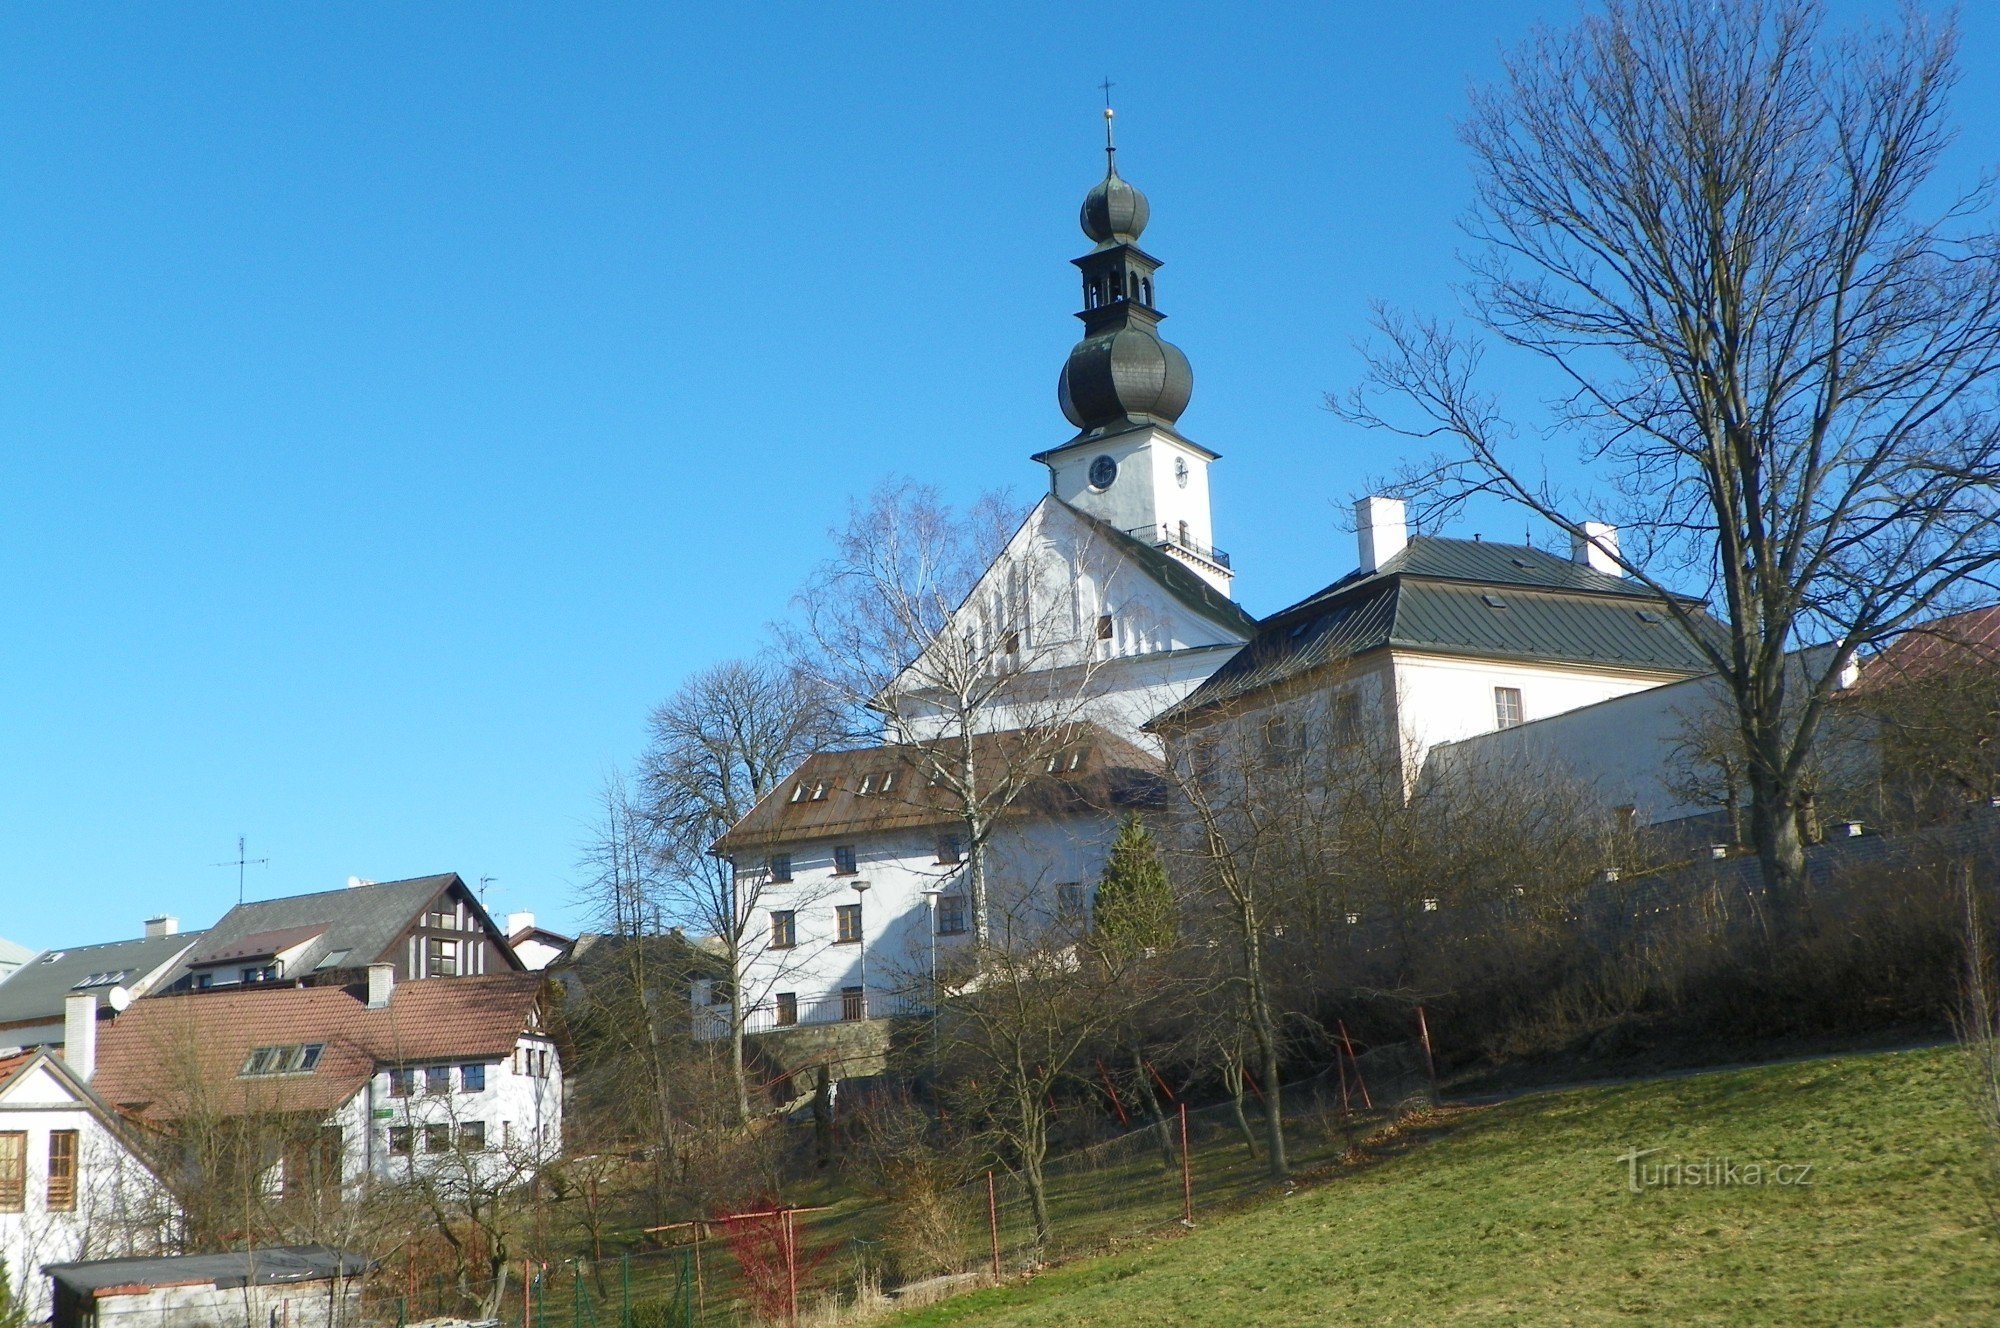 ムチュクの家、牧師館、聖パウロ教会の眺めファルスケ・ヒューメンのプロコップ